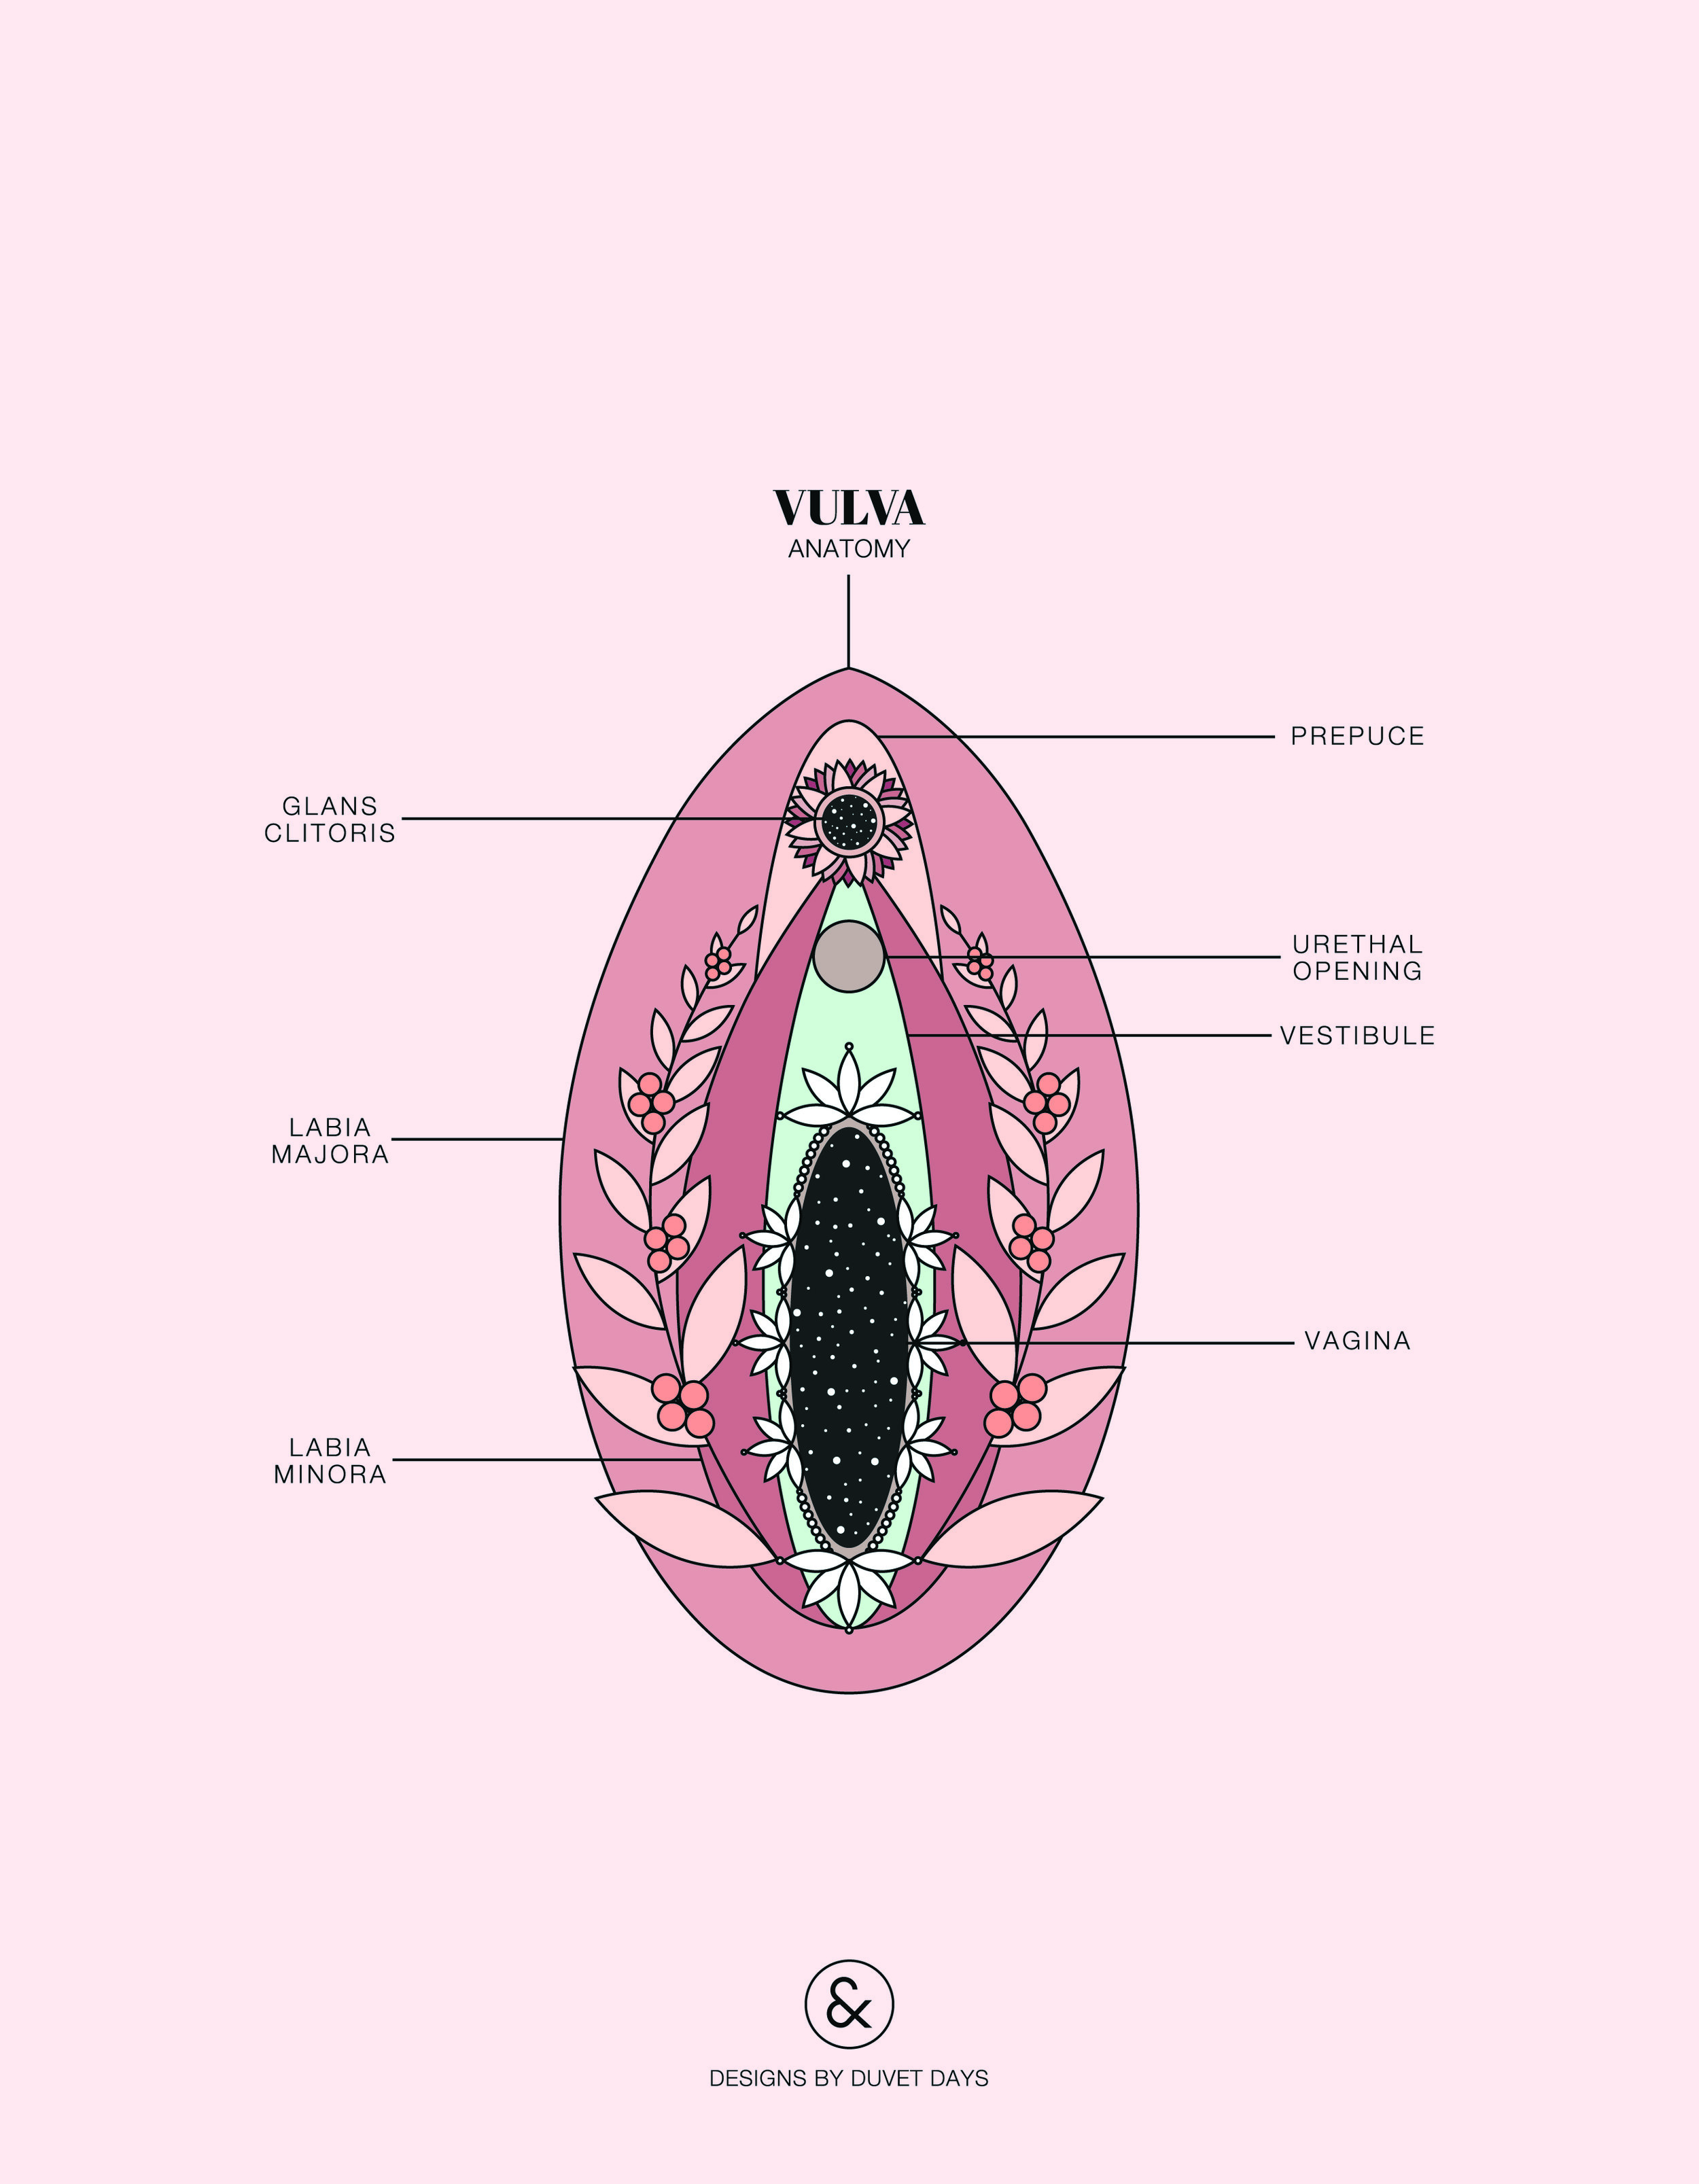 Duvet Days_Anatomy Illustrations_8.5x11_Vulva Anatomy.jpg